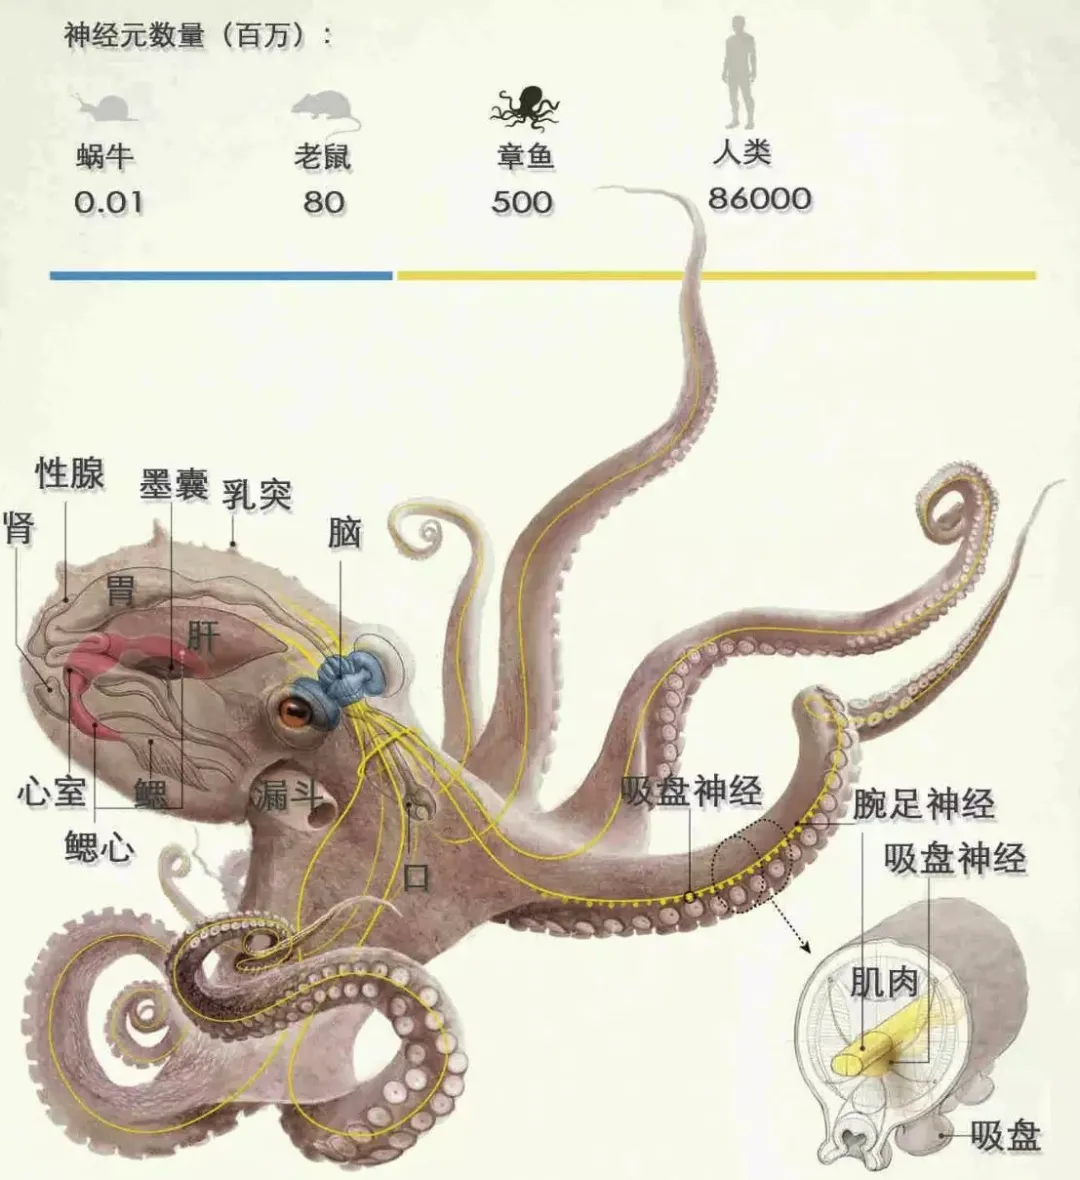 章鱼结构以及神经元对比(图自网络)章鱼结构以及神经元对比(图自网络)